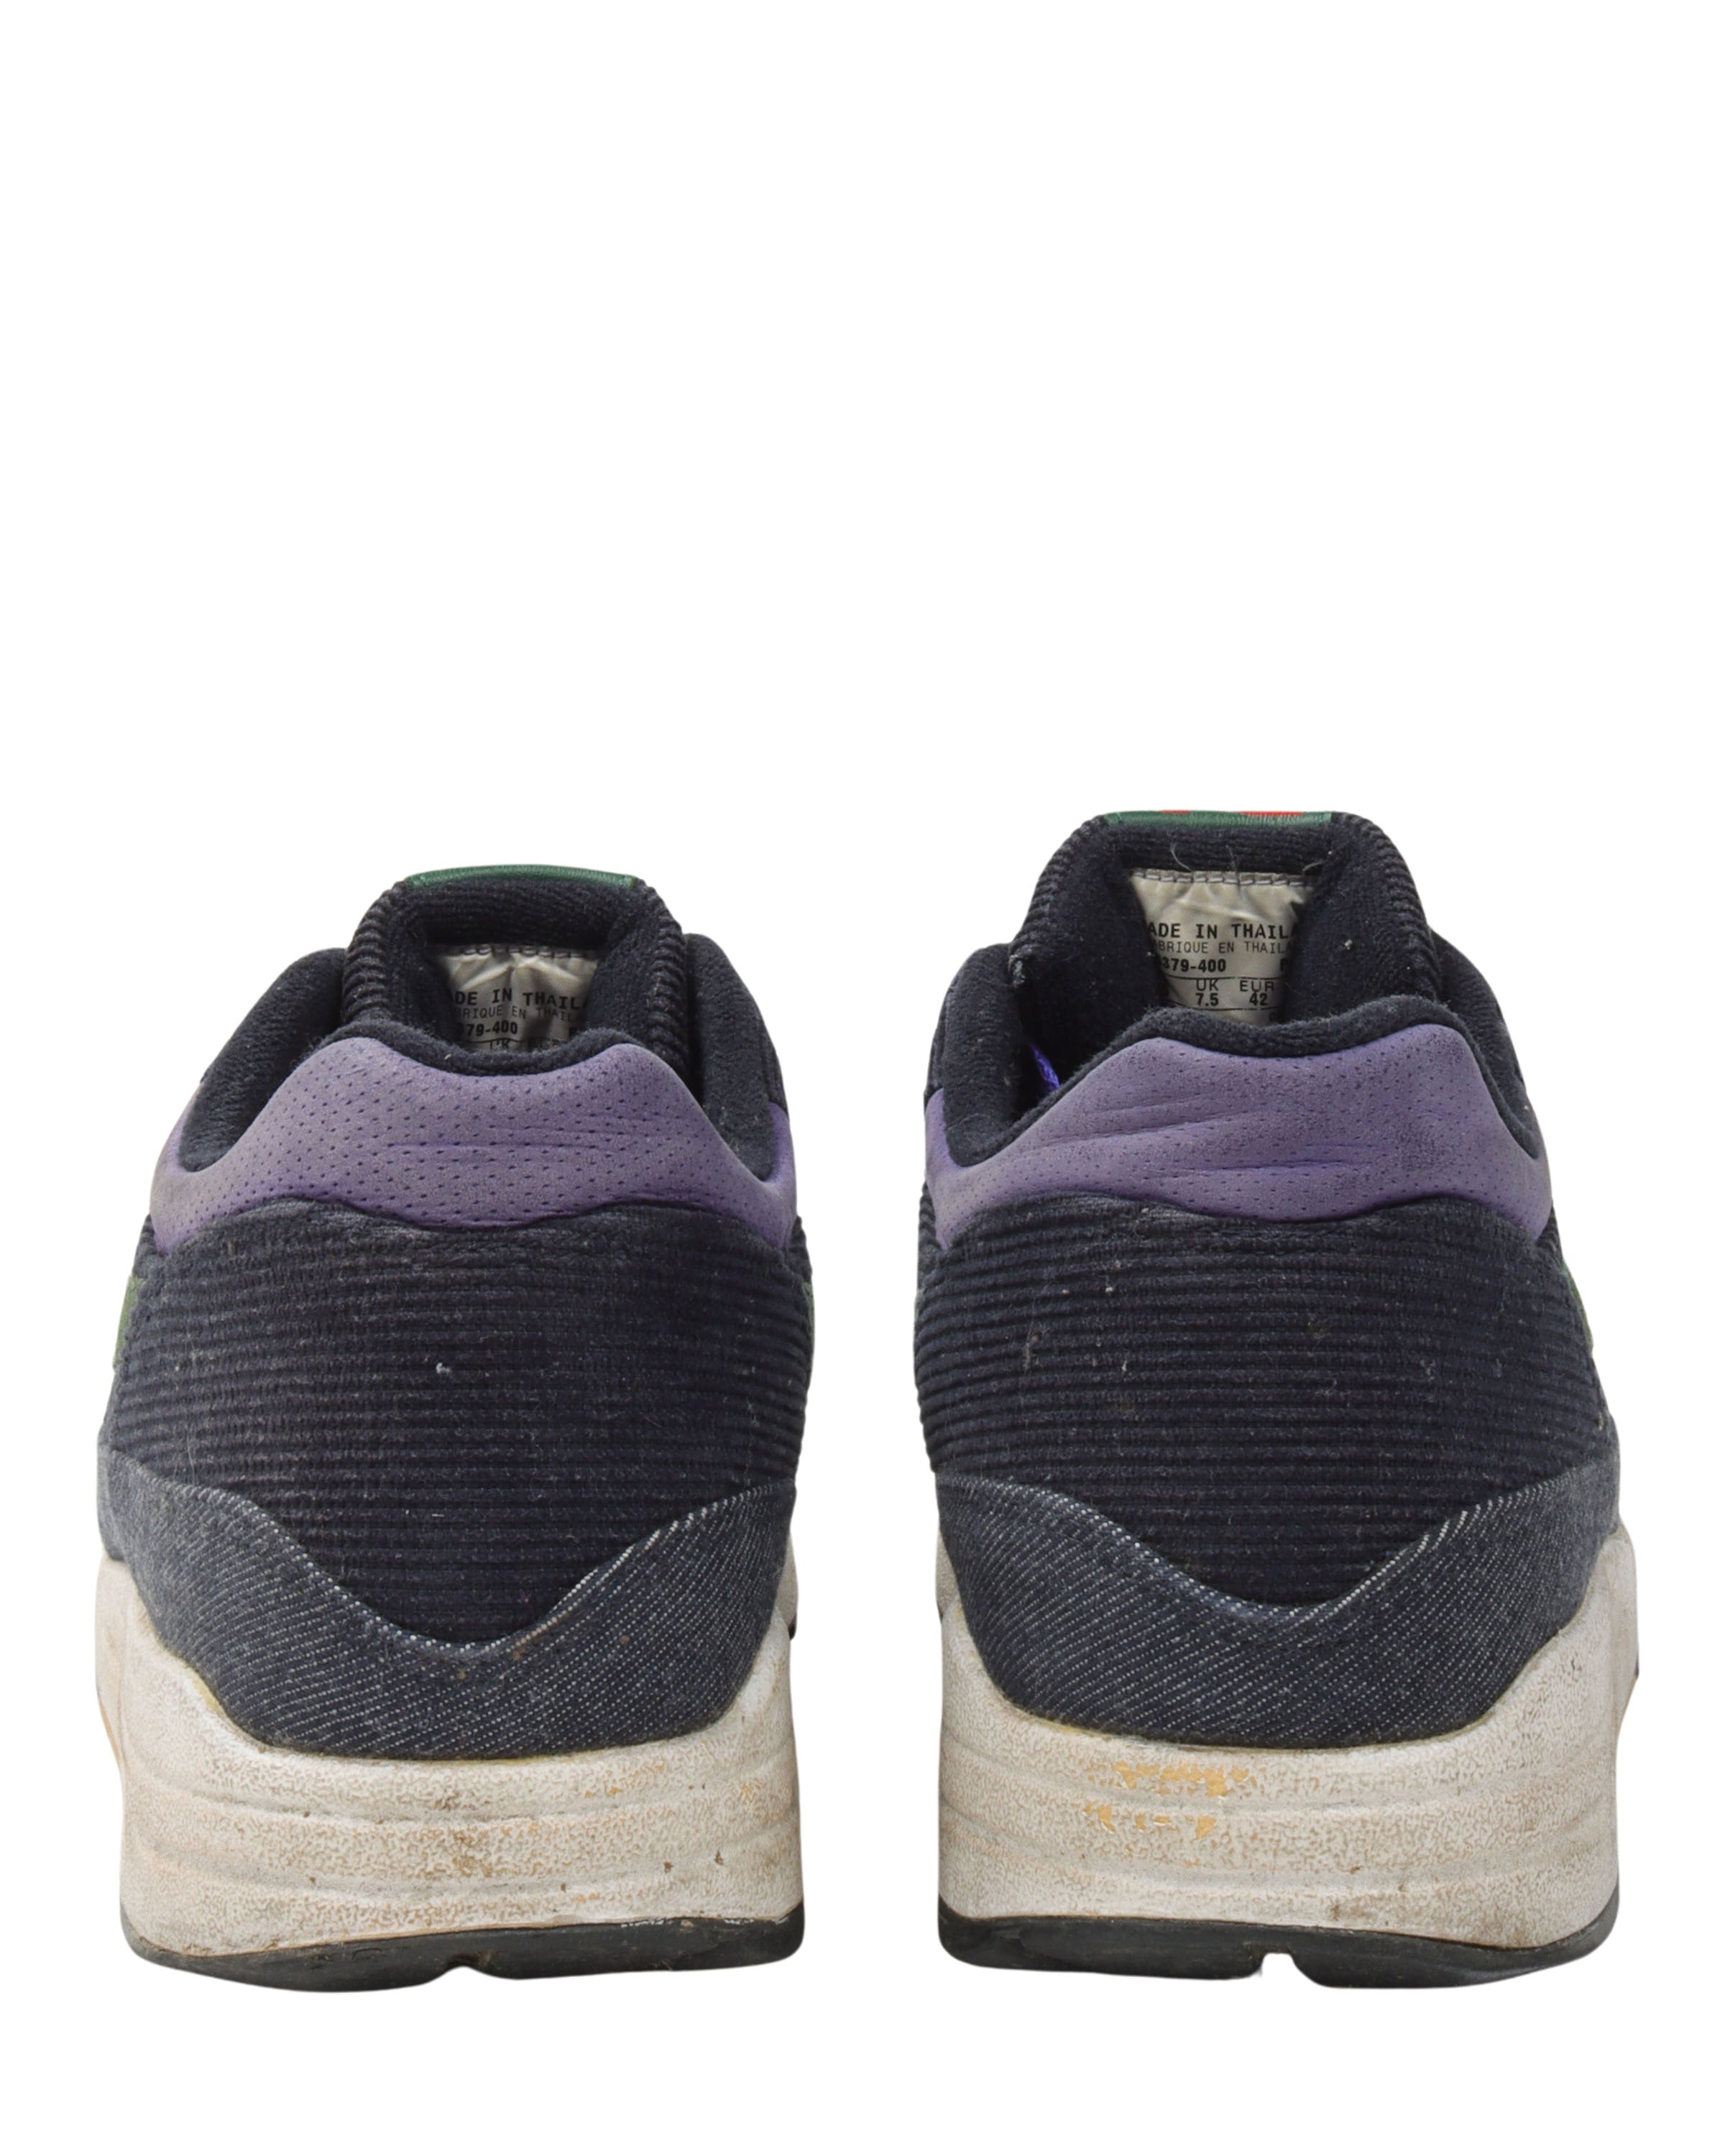 Patta x Nike Sportswear 5th Anniversary Air Max 1 Premium - A Closer Look